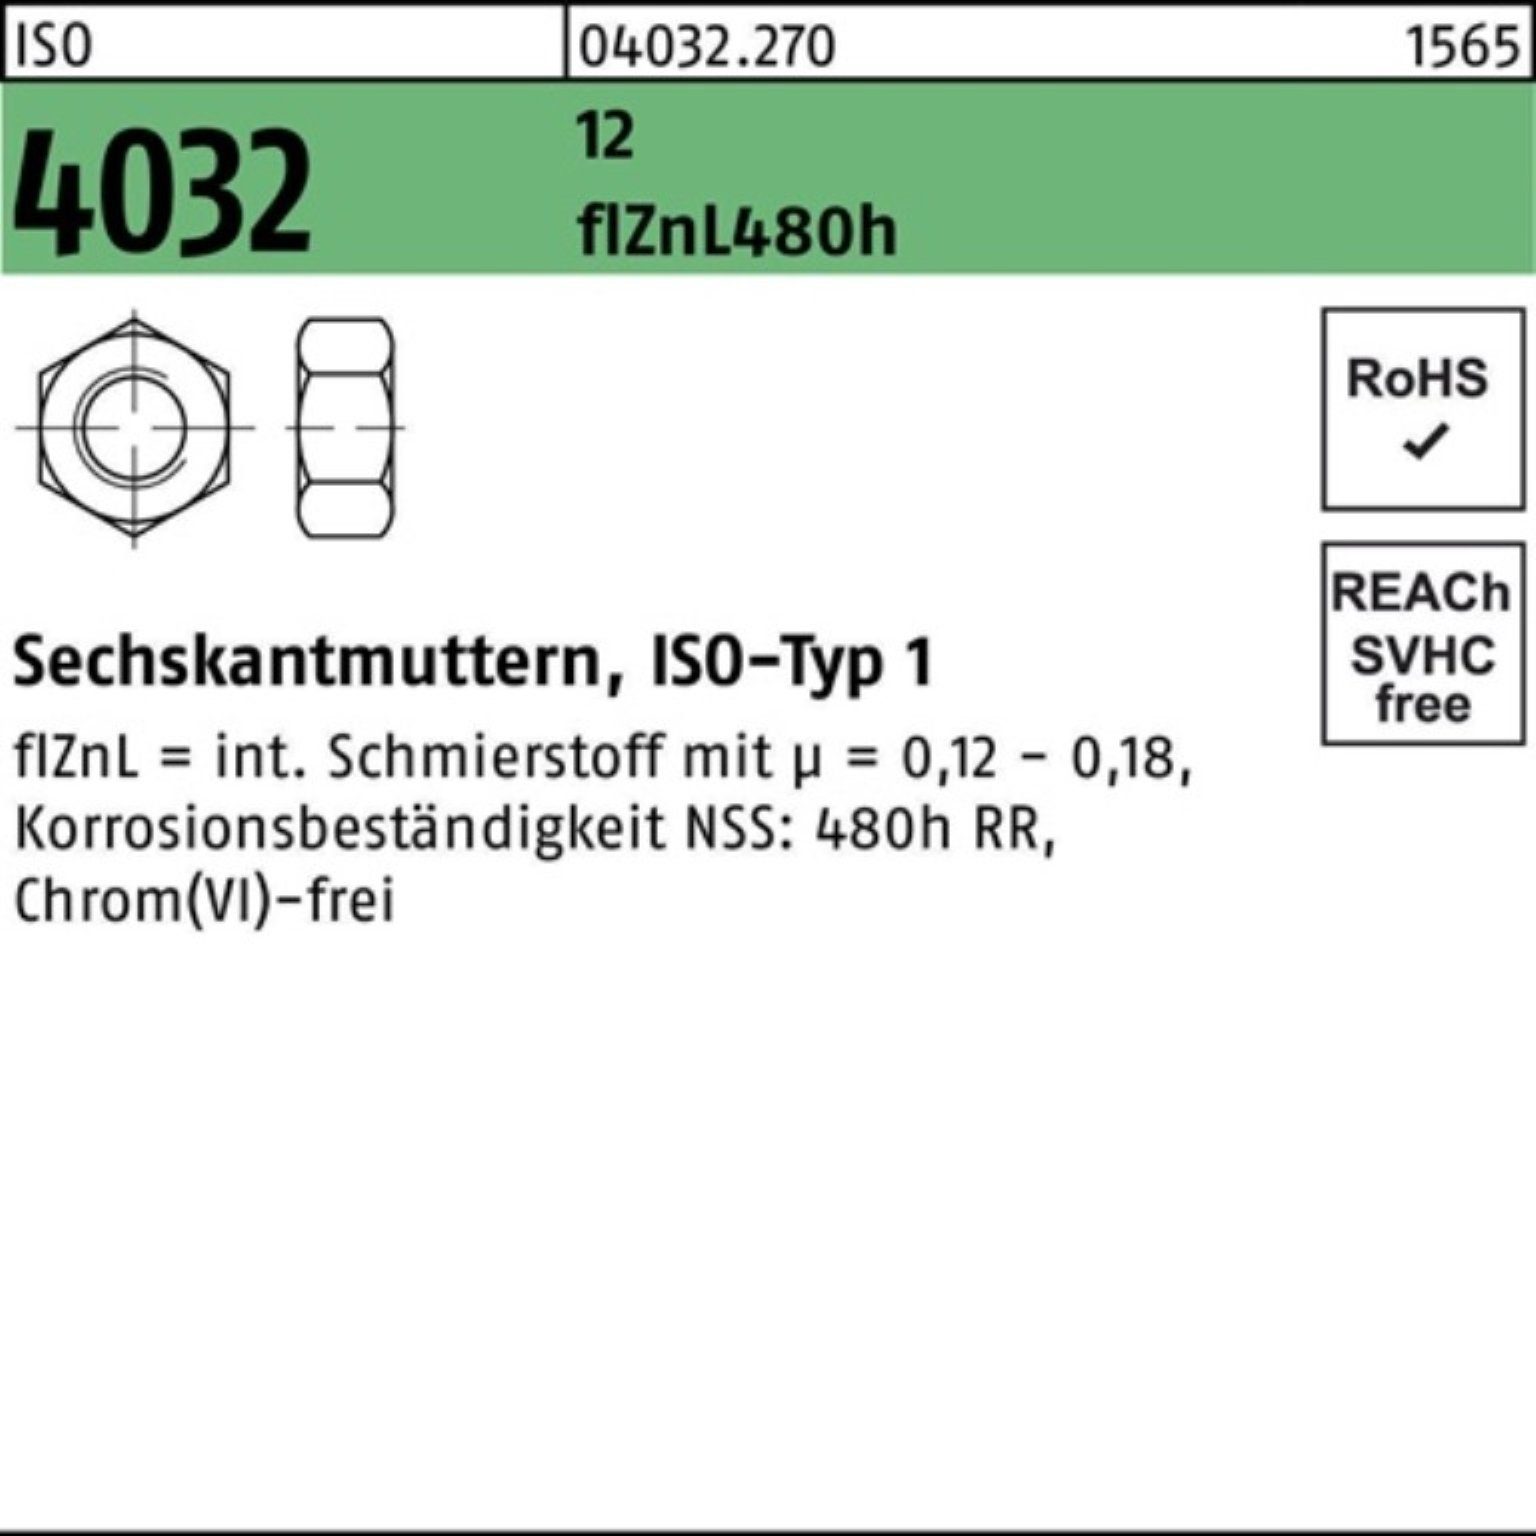 Bufab Muttern 100er Pack Sechskantmutter ISO 4032 M8 12 flZnL 480h zinklamellenb. 10